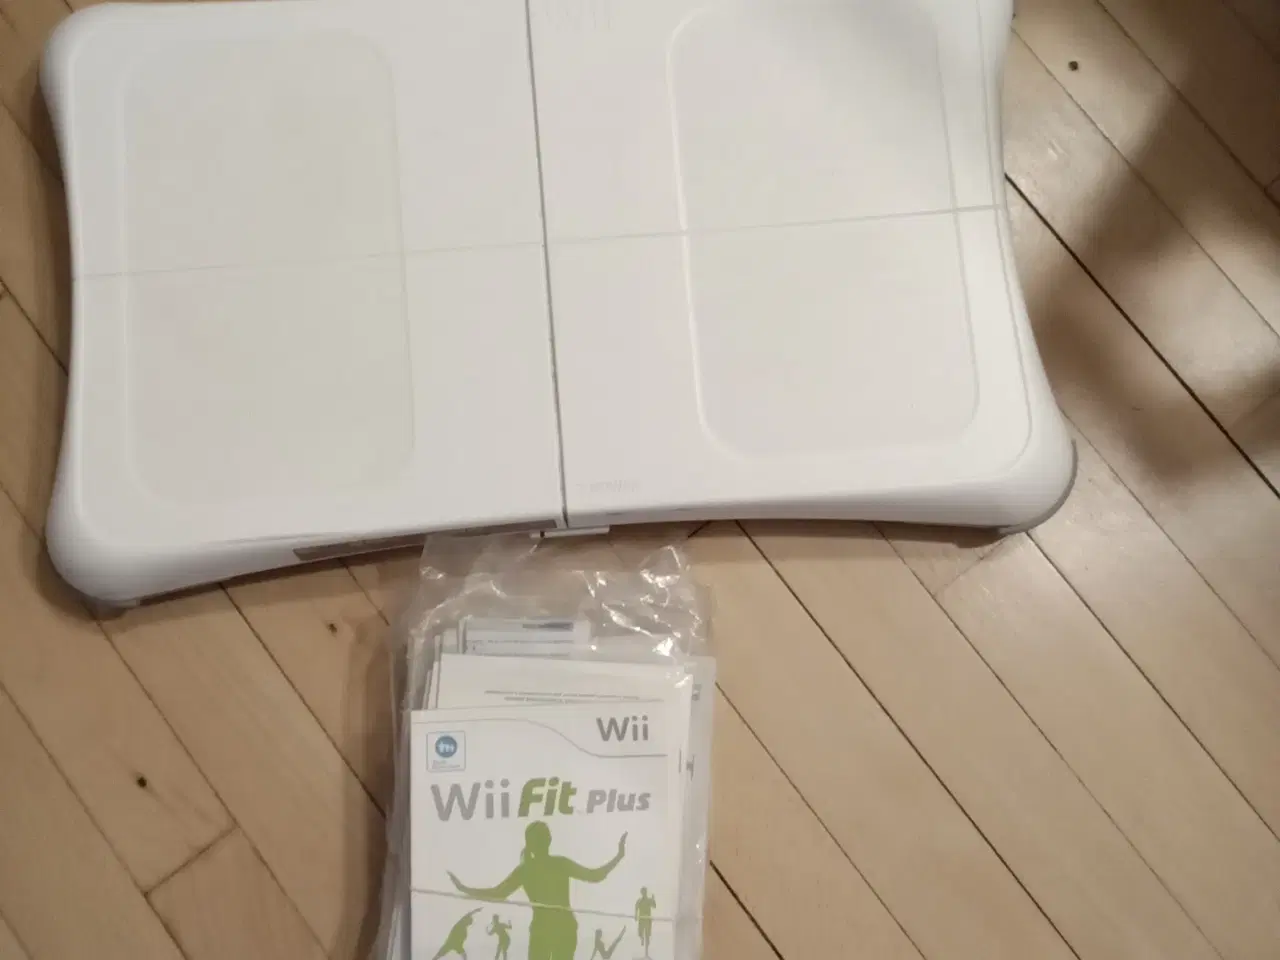 Billede 4 - Wii fit plus kom med et seriøst bud